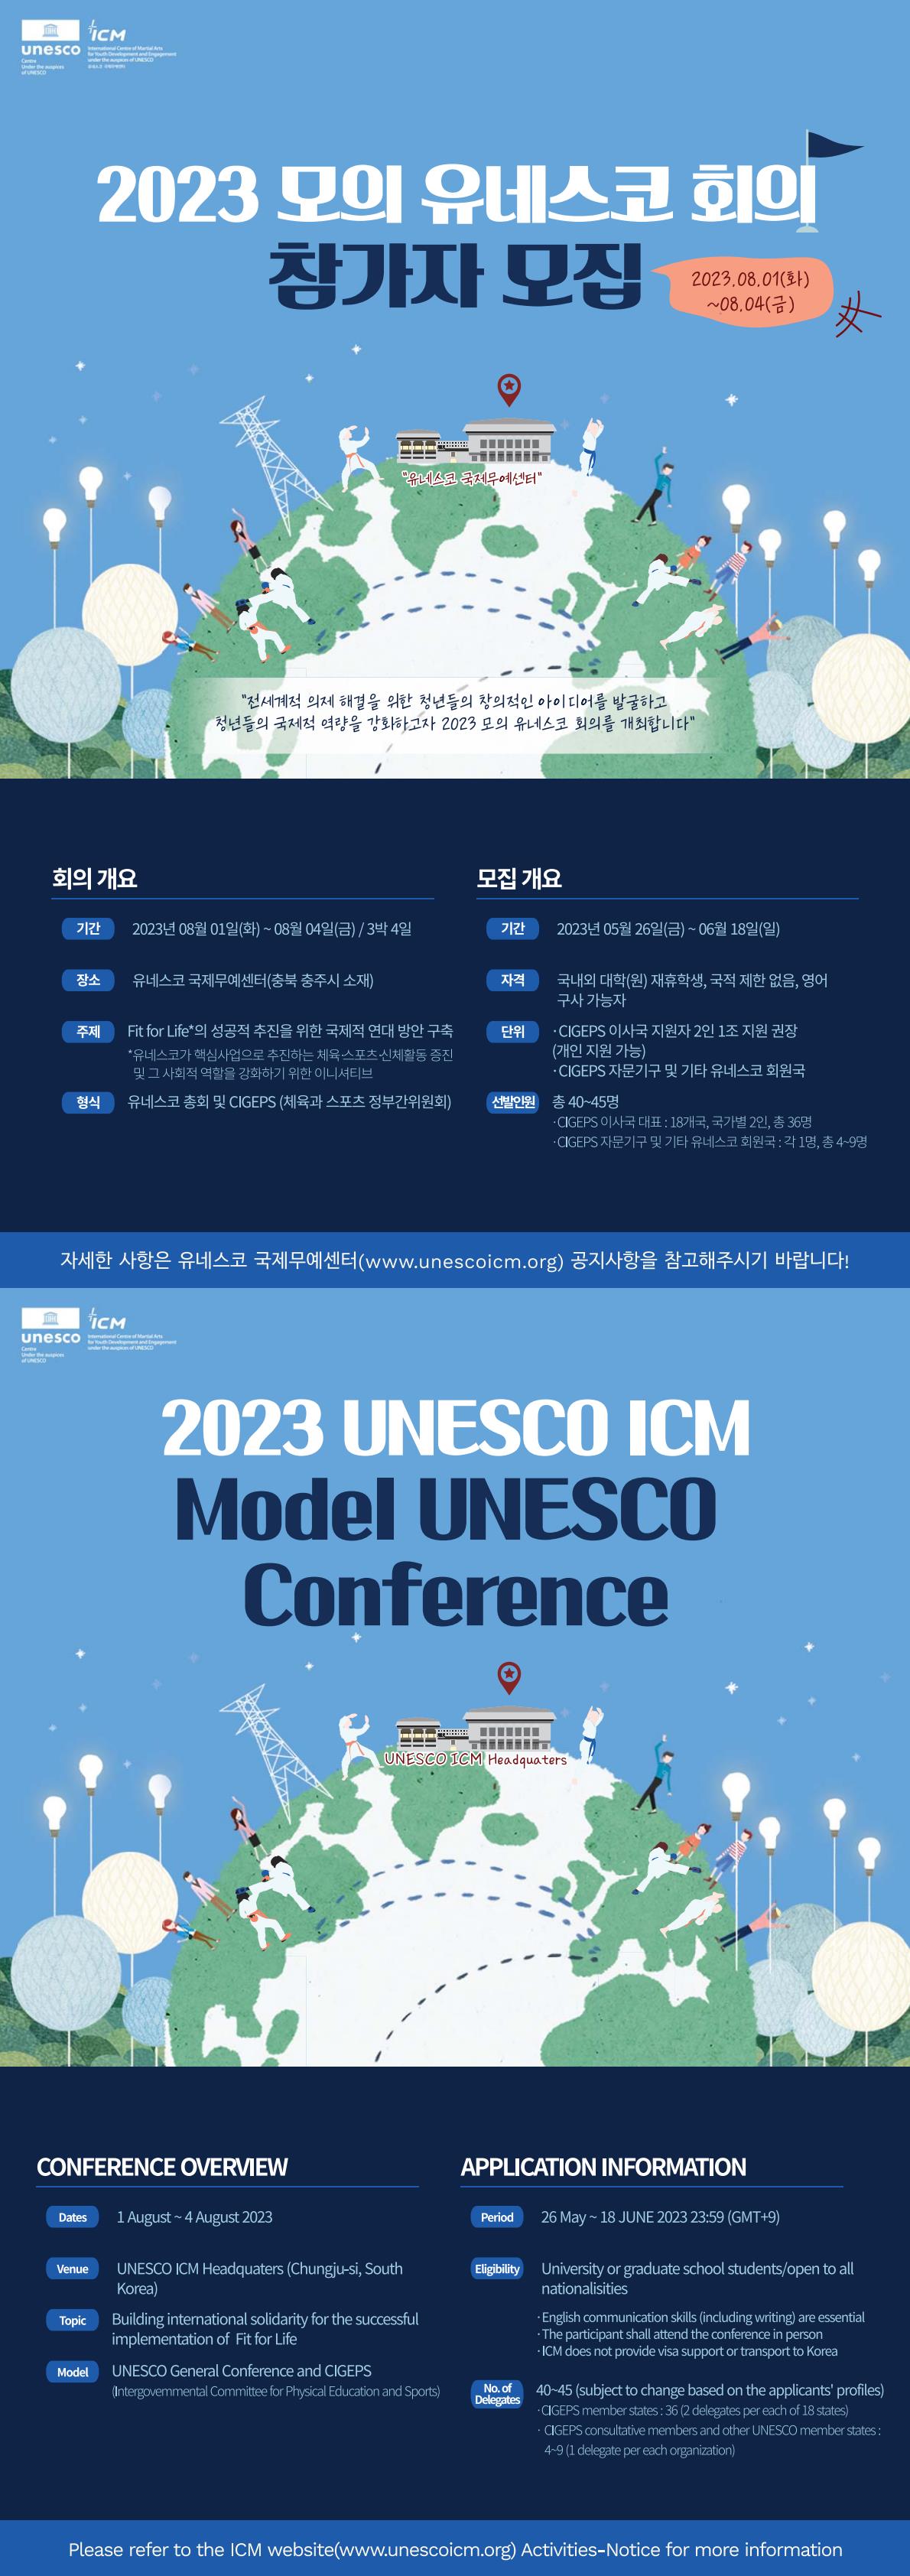 2023 제2회 모의 유네스코 회의 대표단 모집 포스터